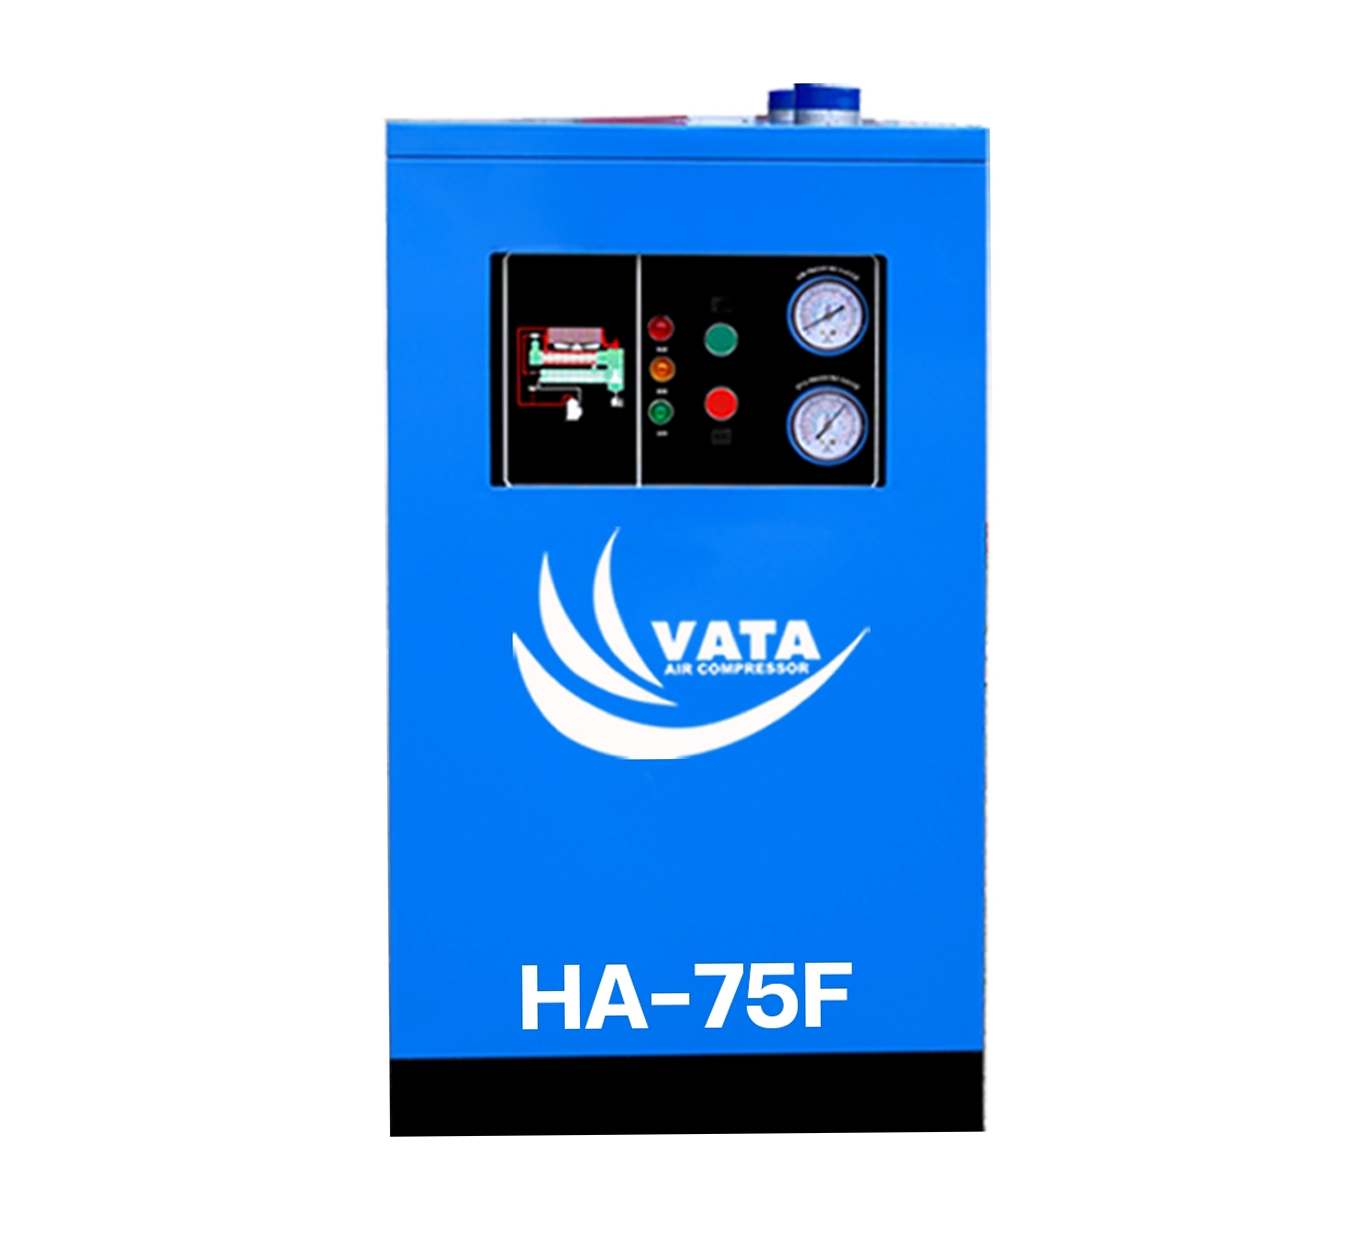 เครื่องทำลมแห้ง Refrigerated Air Dryer แบรนด์ VATA รุ่น HA-75F ขนาด 1.98 kw. ไฟฟ้า 220V รับประกันสินค้า 1 ปี ตามเงื่อนไขของบริษัทฯ